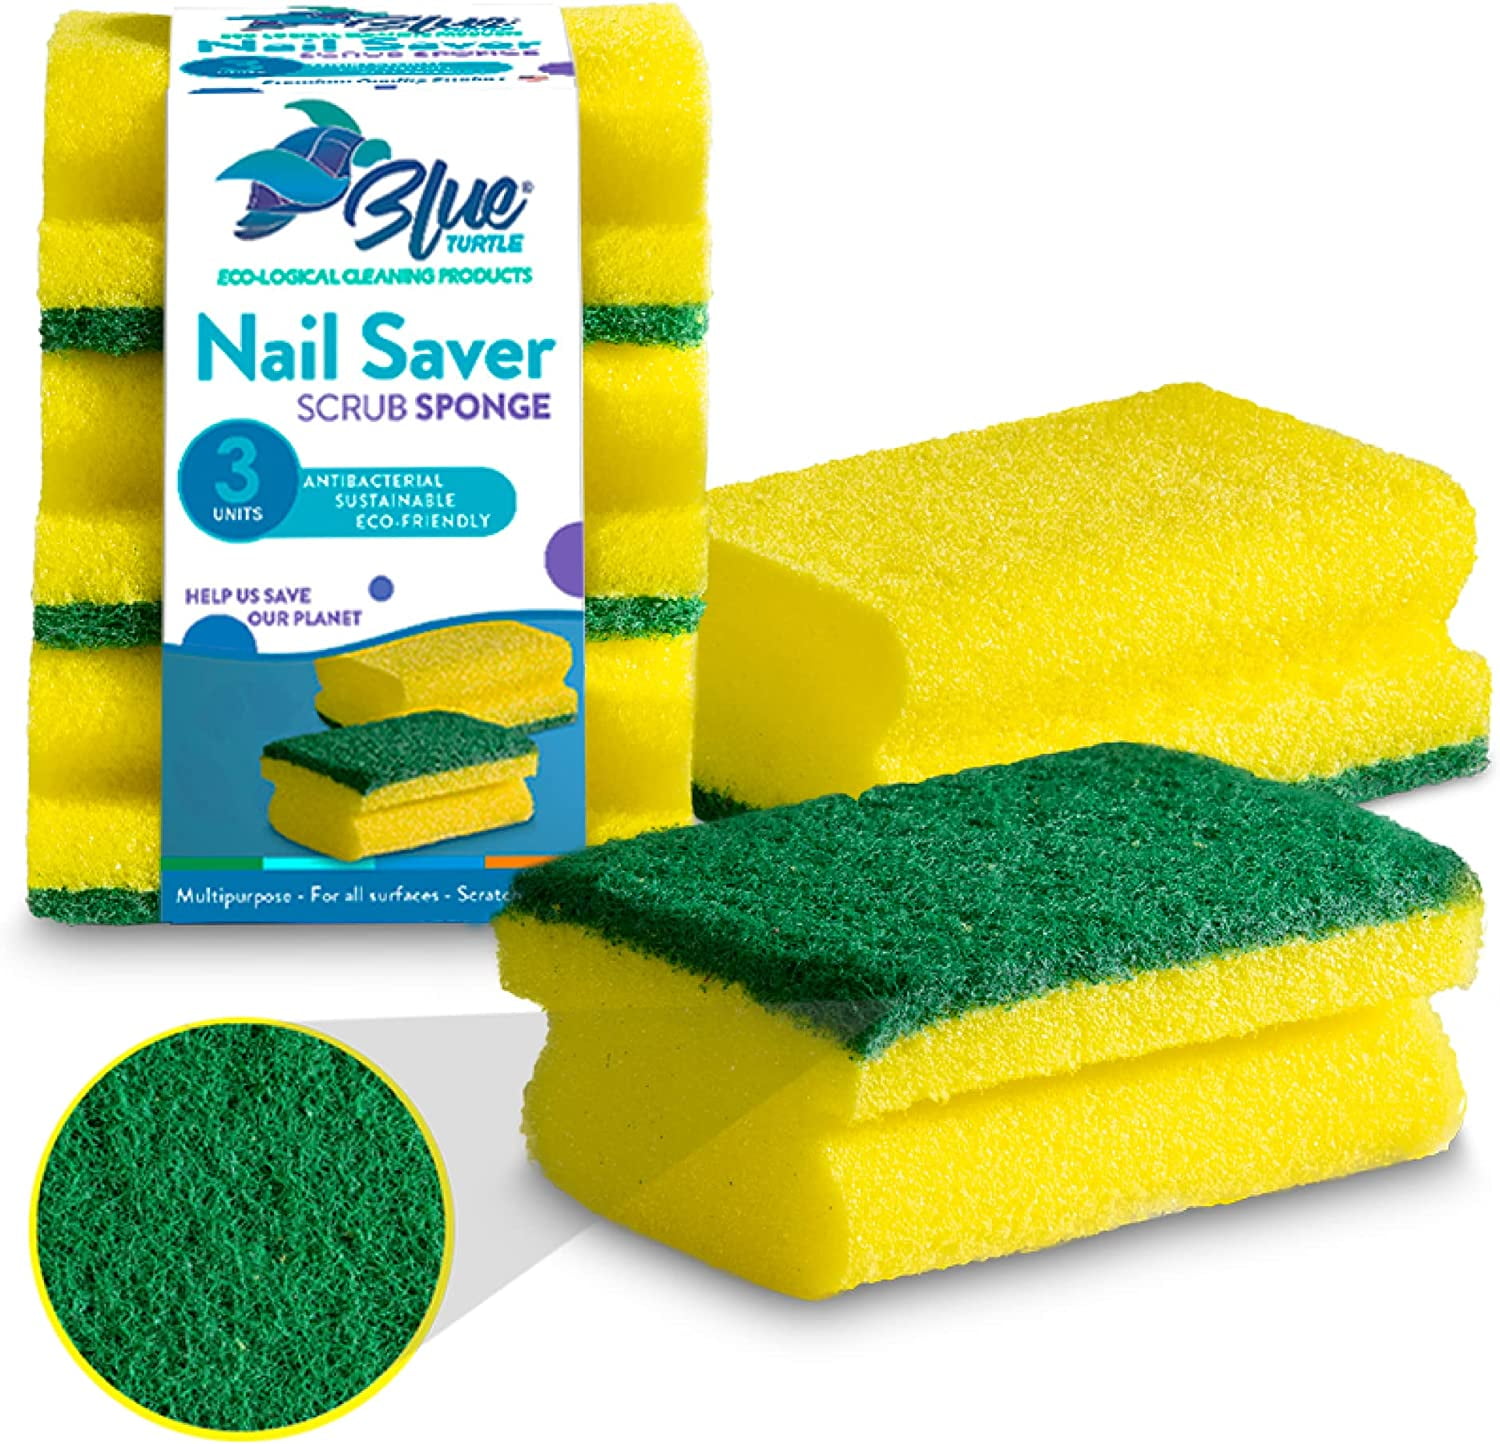 Two Sides Sponge For Fast Utensil Cleaning - Inspire Uplift